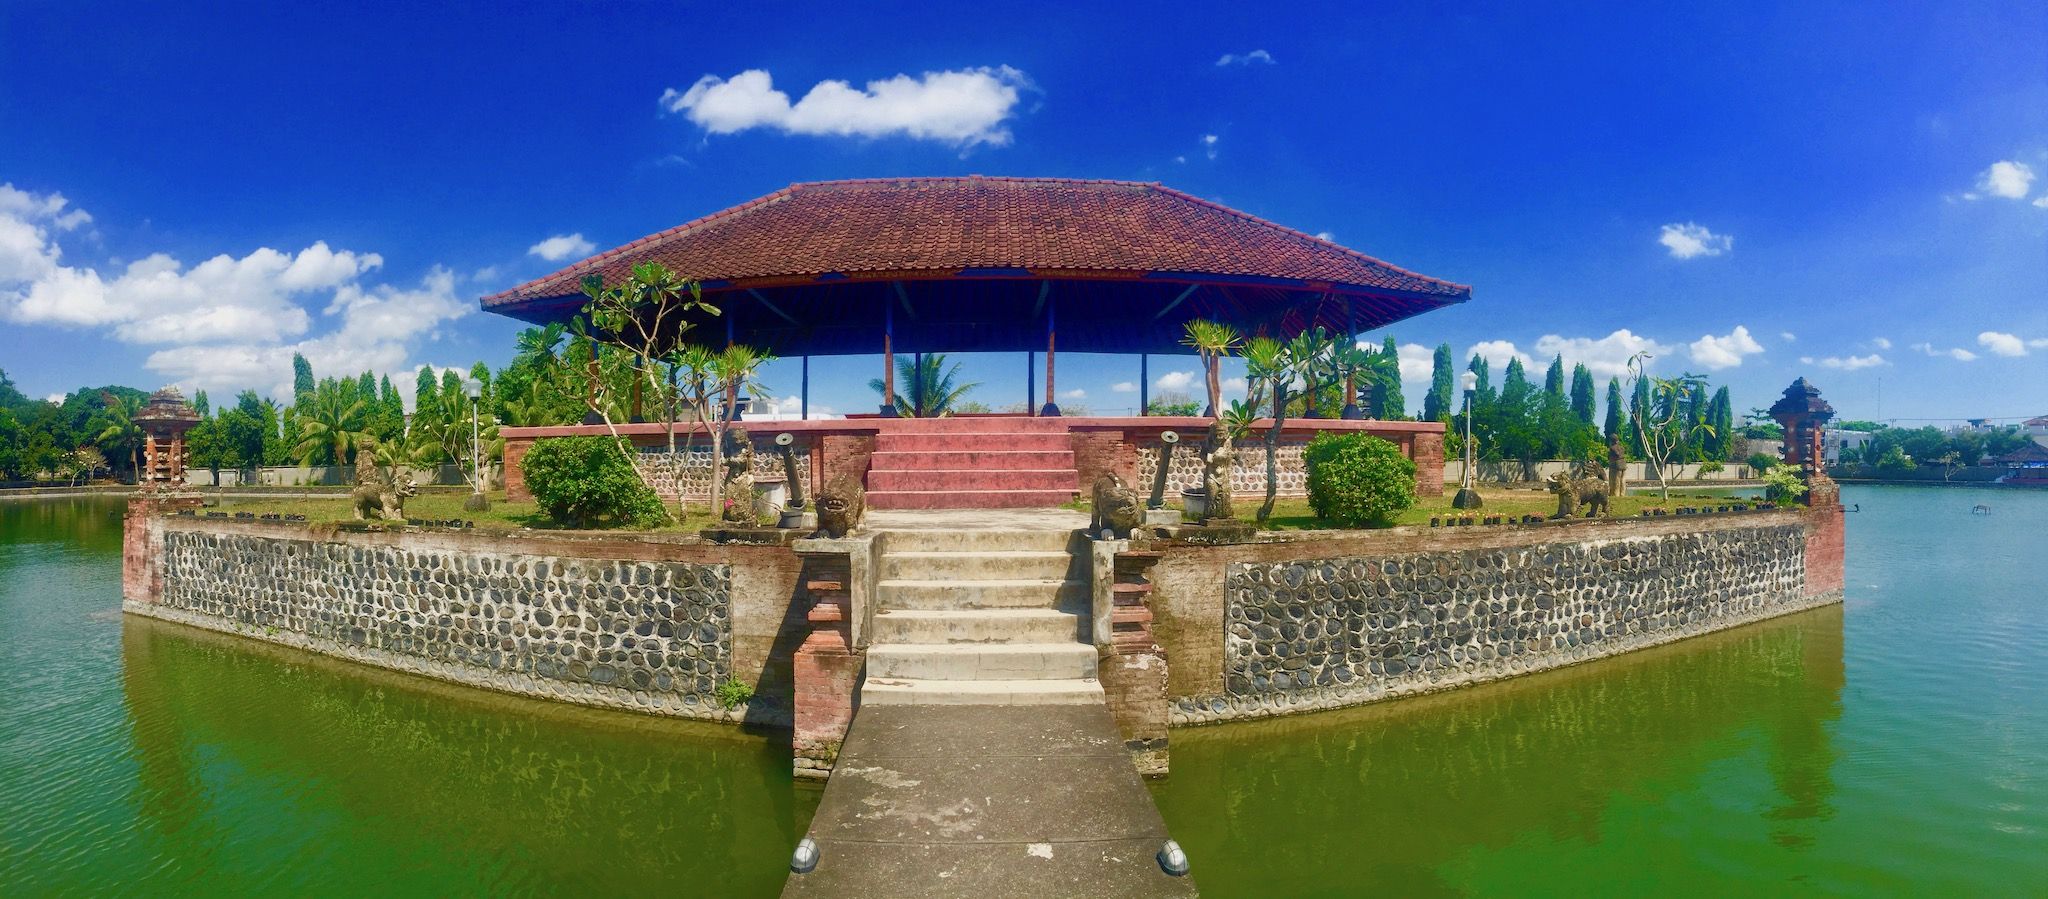 Dicas de turismo na Indonésia – O estado insular atrai com lugares paradisíacos